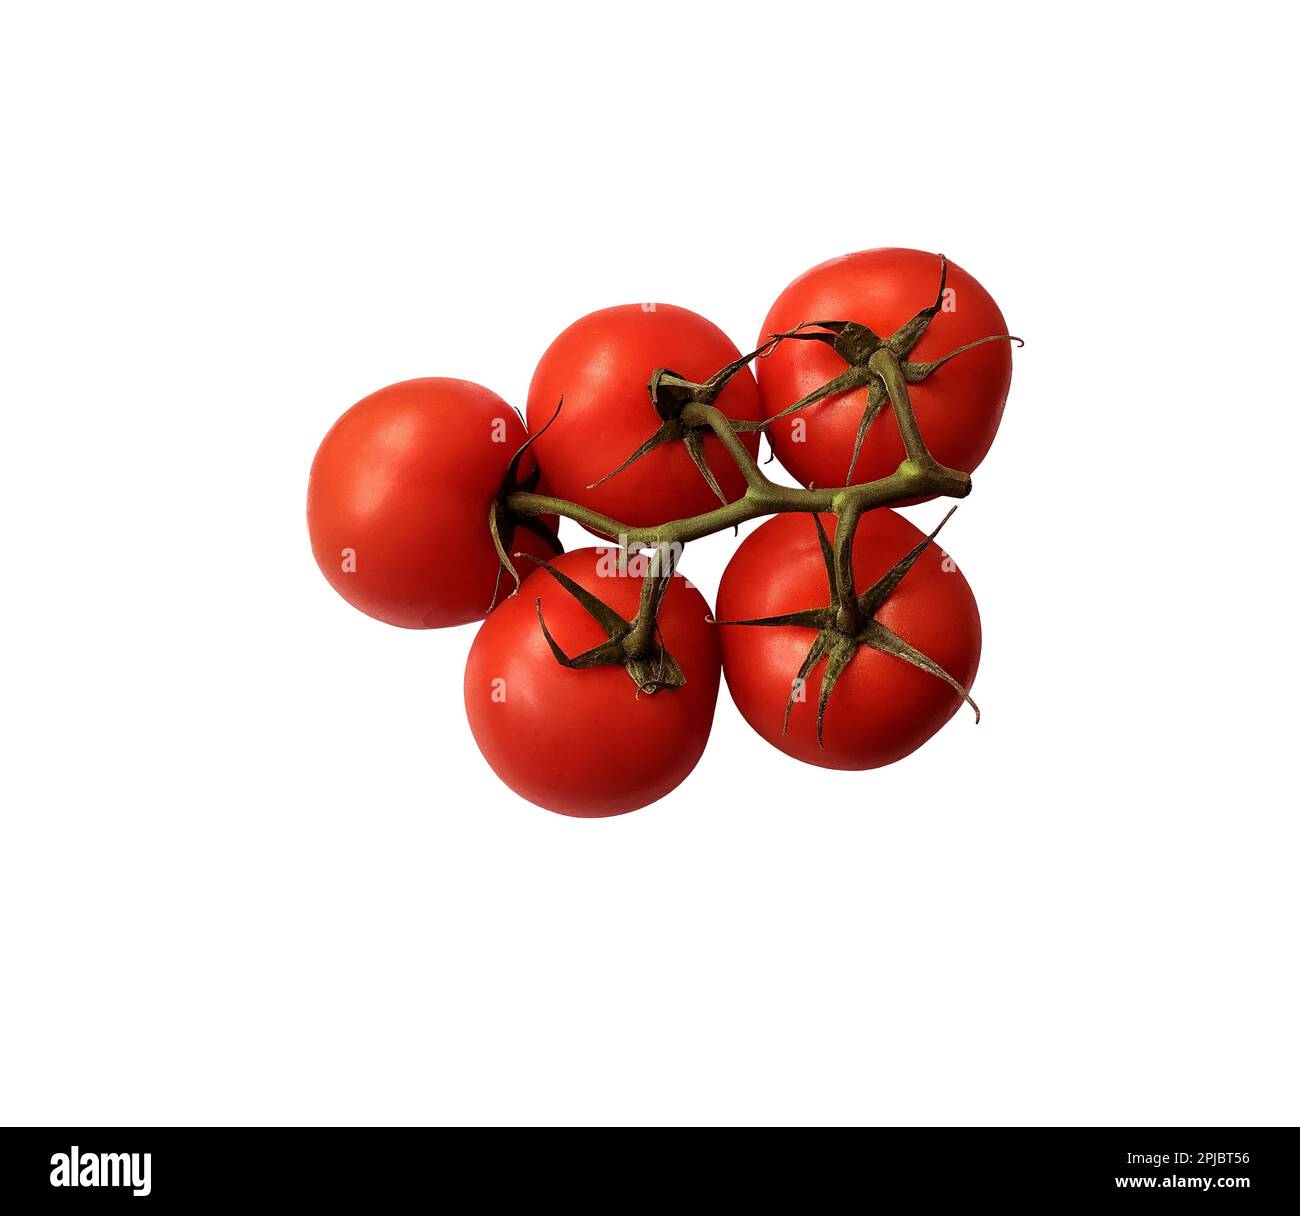 Pomodori rossi maturi ramo con gambo verde e foglie, ritaglio oggetto percorso di taglio, vegetale biologico sano dieta concetto Foto Stock